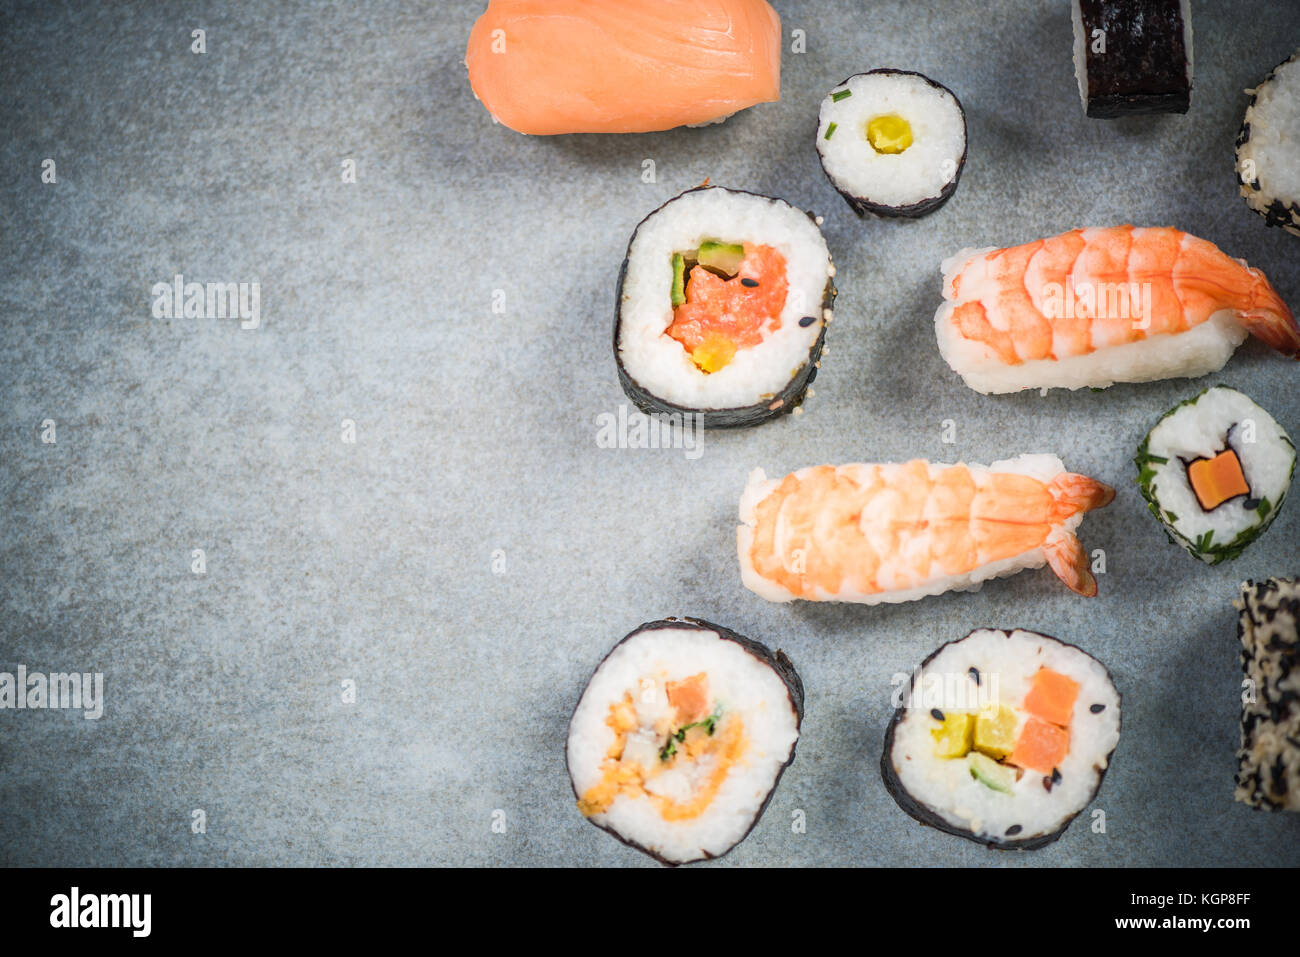 Japanese or asian sushi border background. Stock Photo